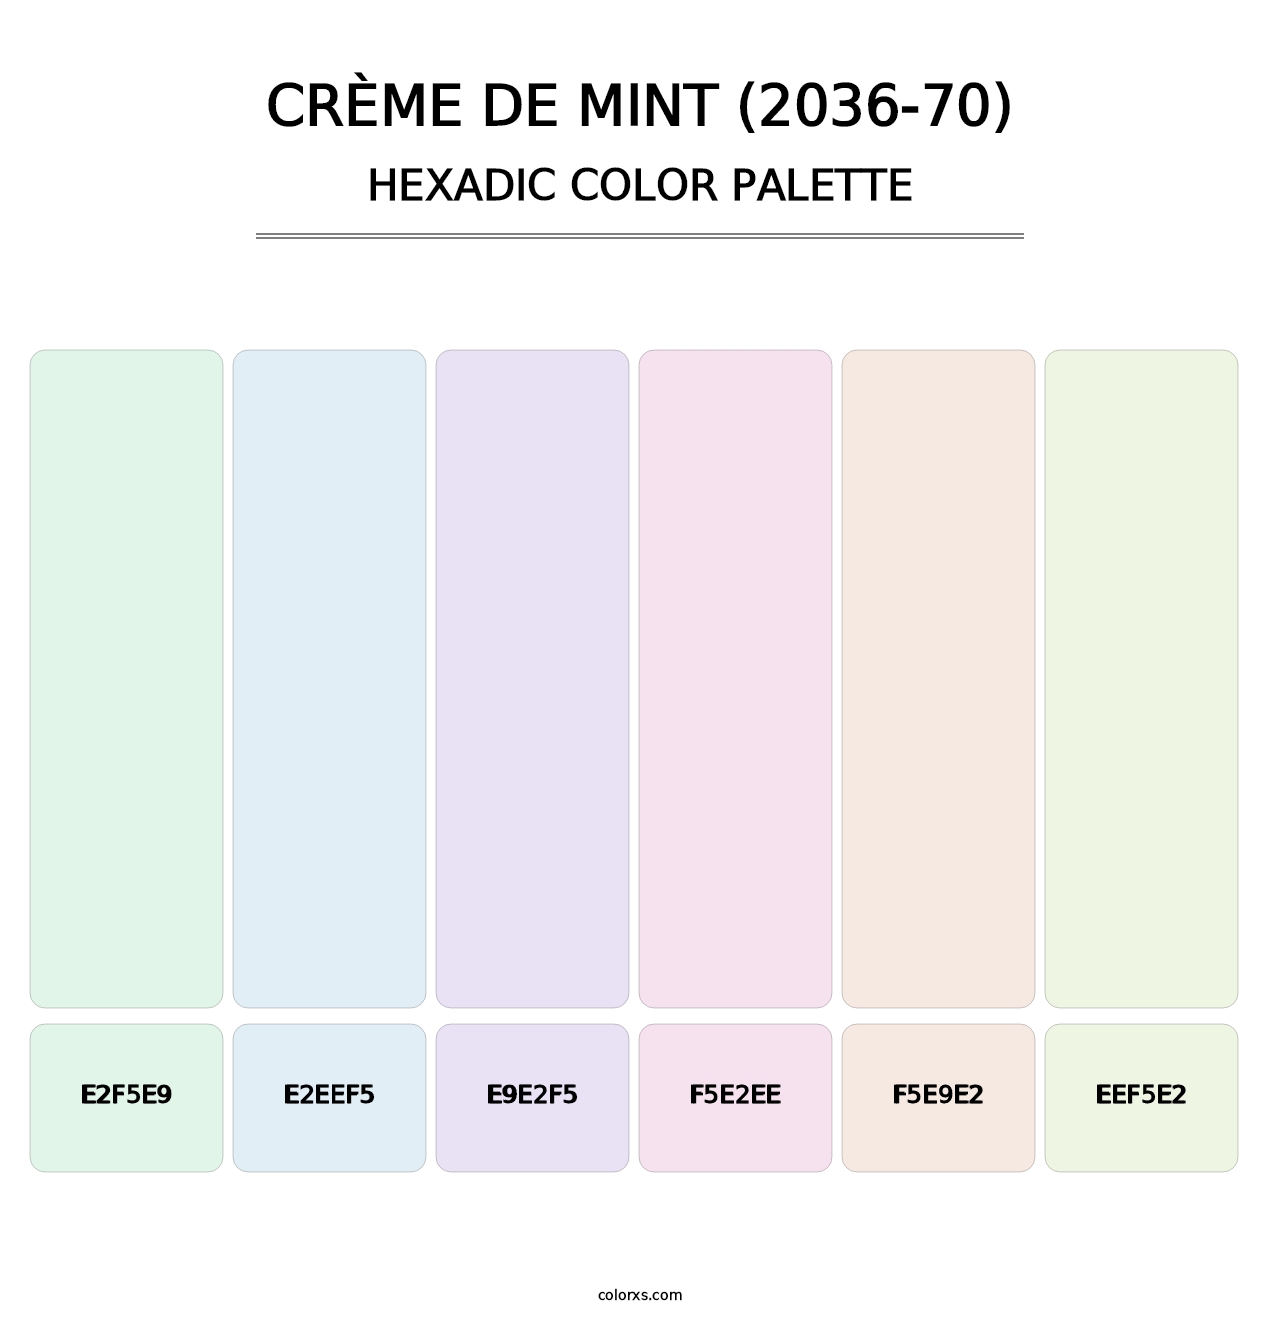 Crème de Mint (2036-70) - Hexadic Color Palette